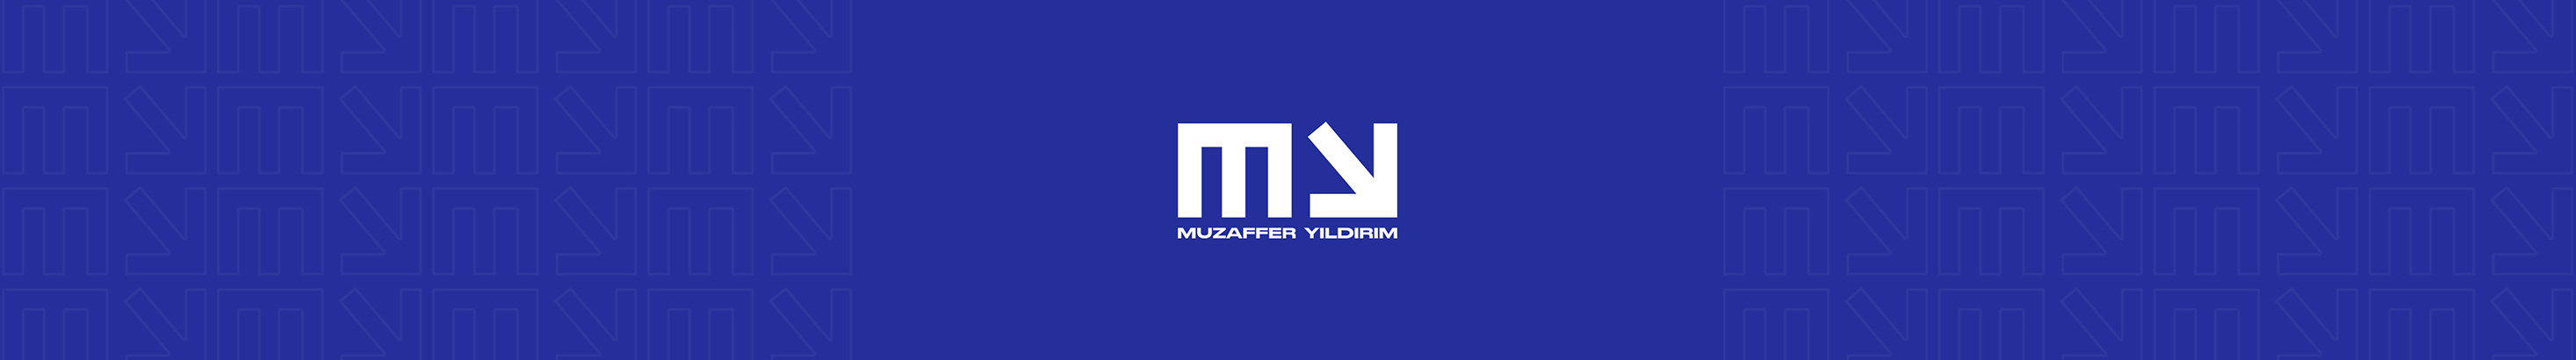 Muzaffer Yıldırım's profile banner